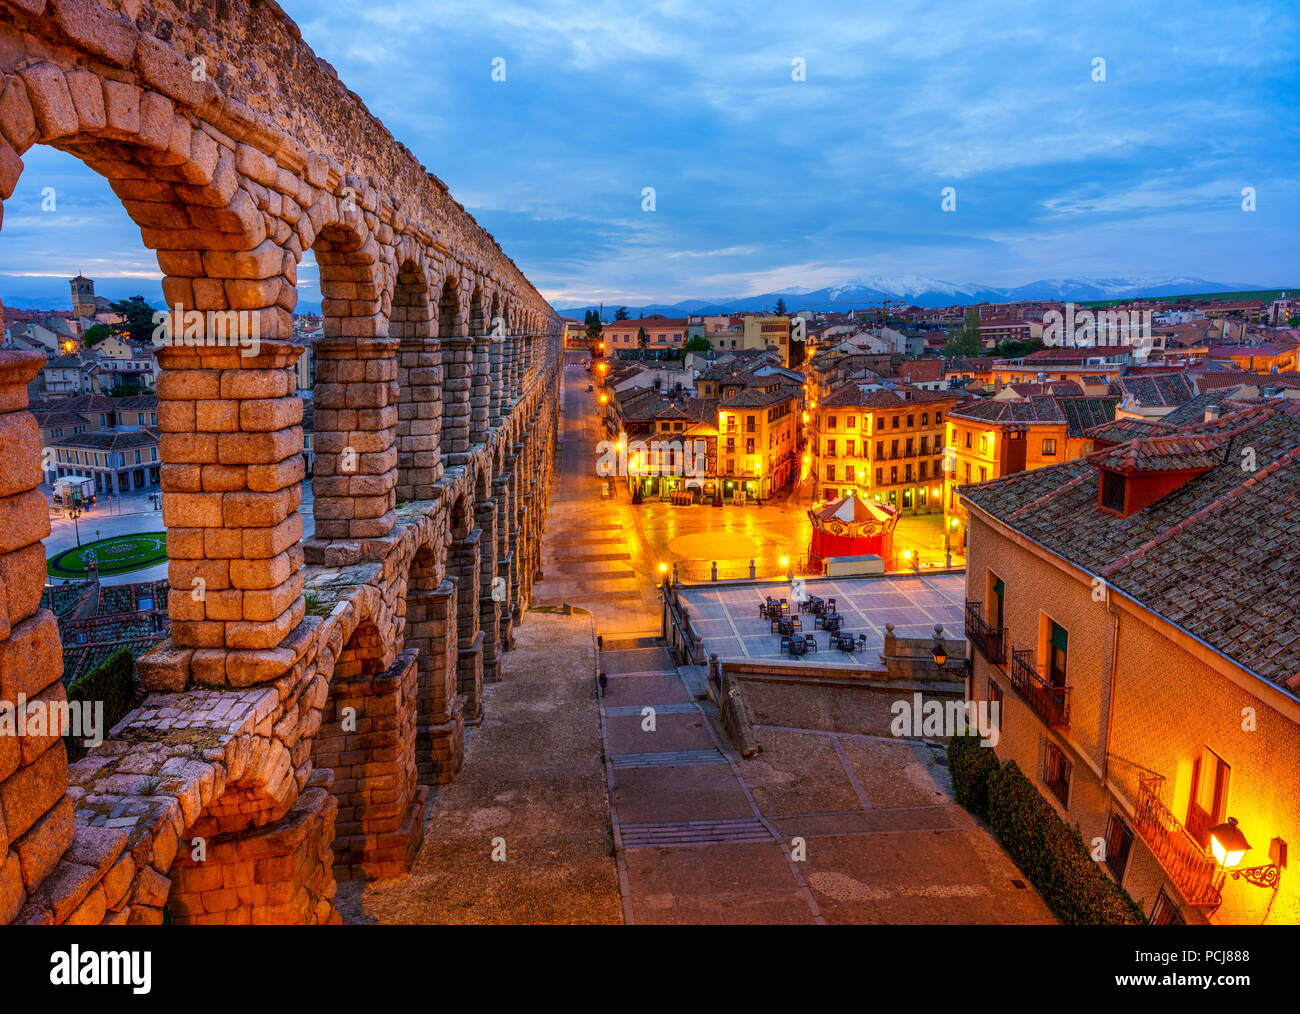 Das Aquädukt von Segovia, Spanien, war während des Römischen Reiches erbaut und steht wie es bis heute konzipiert wurde. Das aquädukt ist aus Ziegeln gebaut - wie Gran Stockfoto